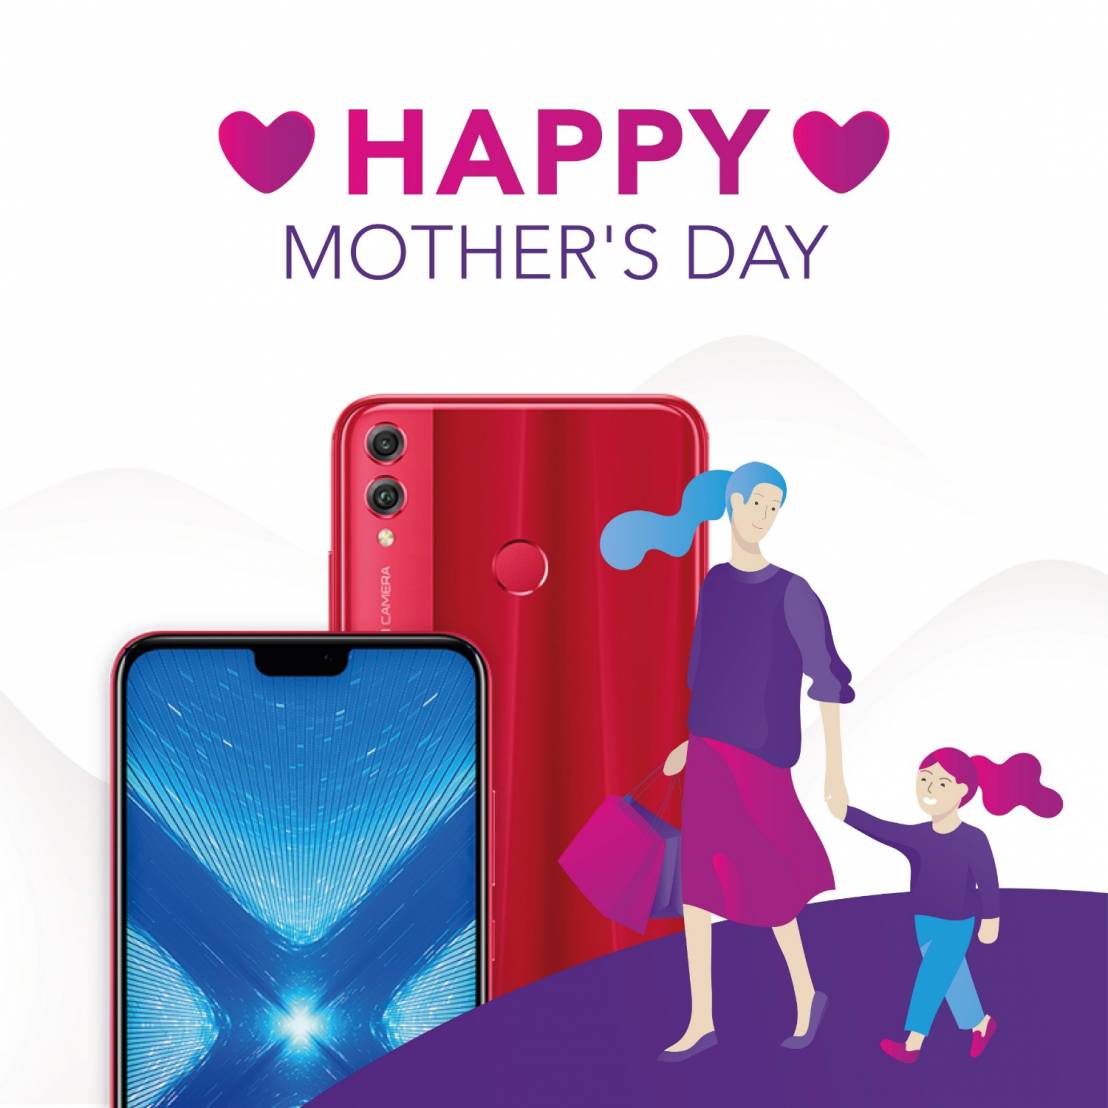 هدايا رائعة للأمهات في عيدهن...هواتف ذكية متفوقة من HONOR